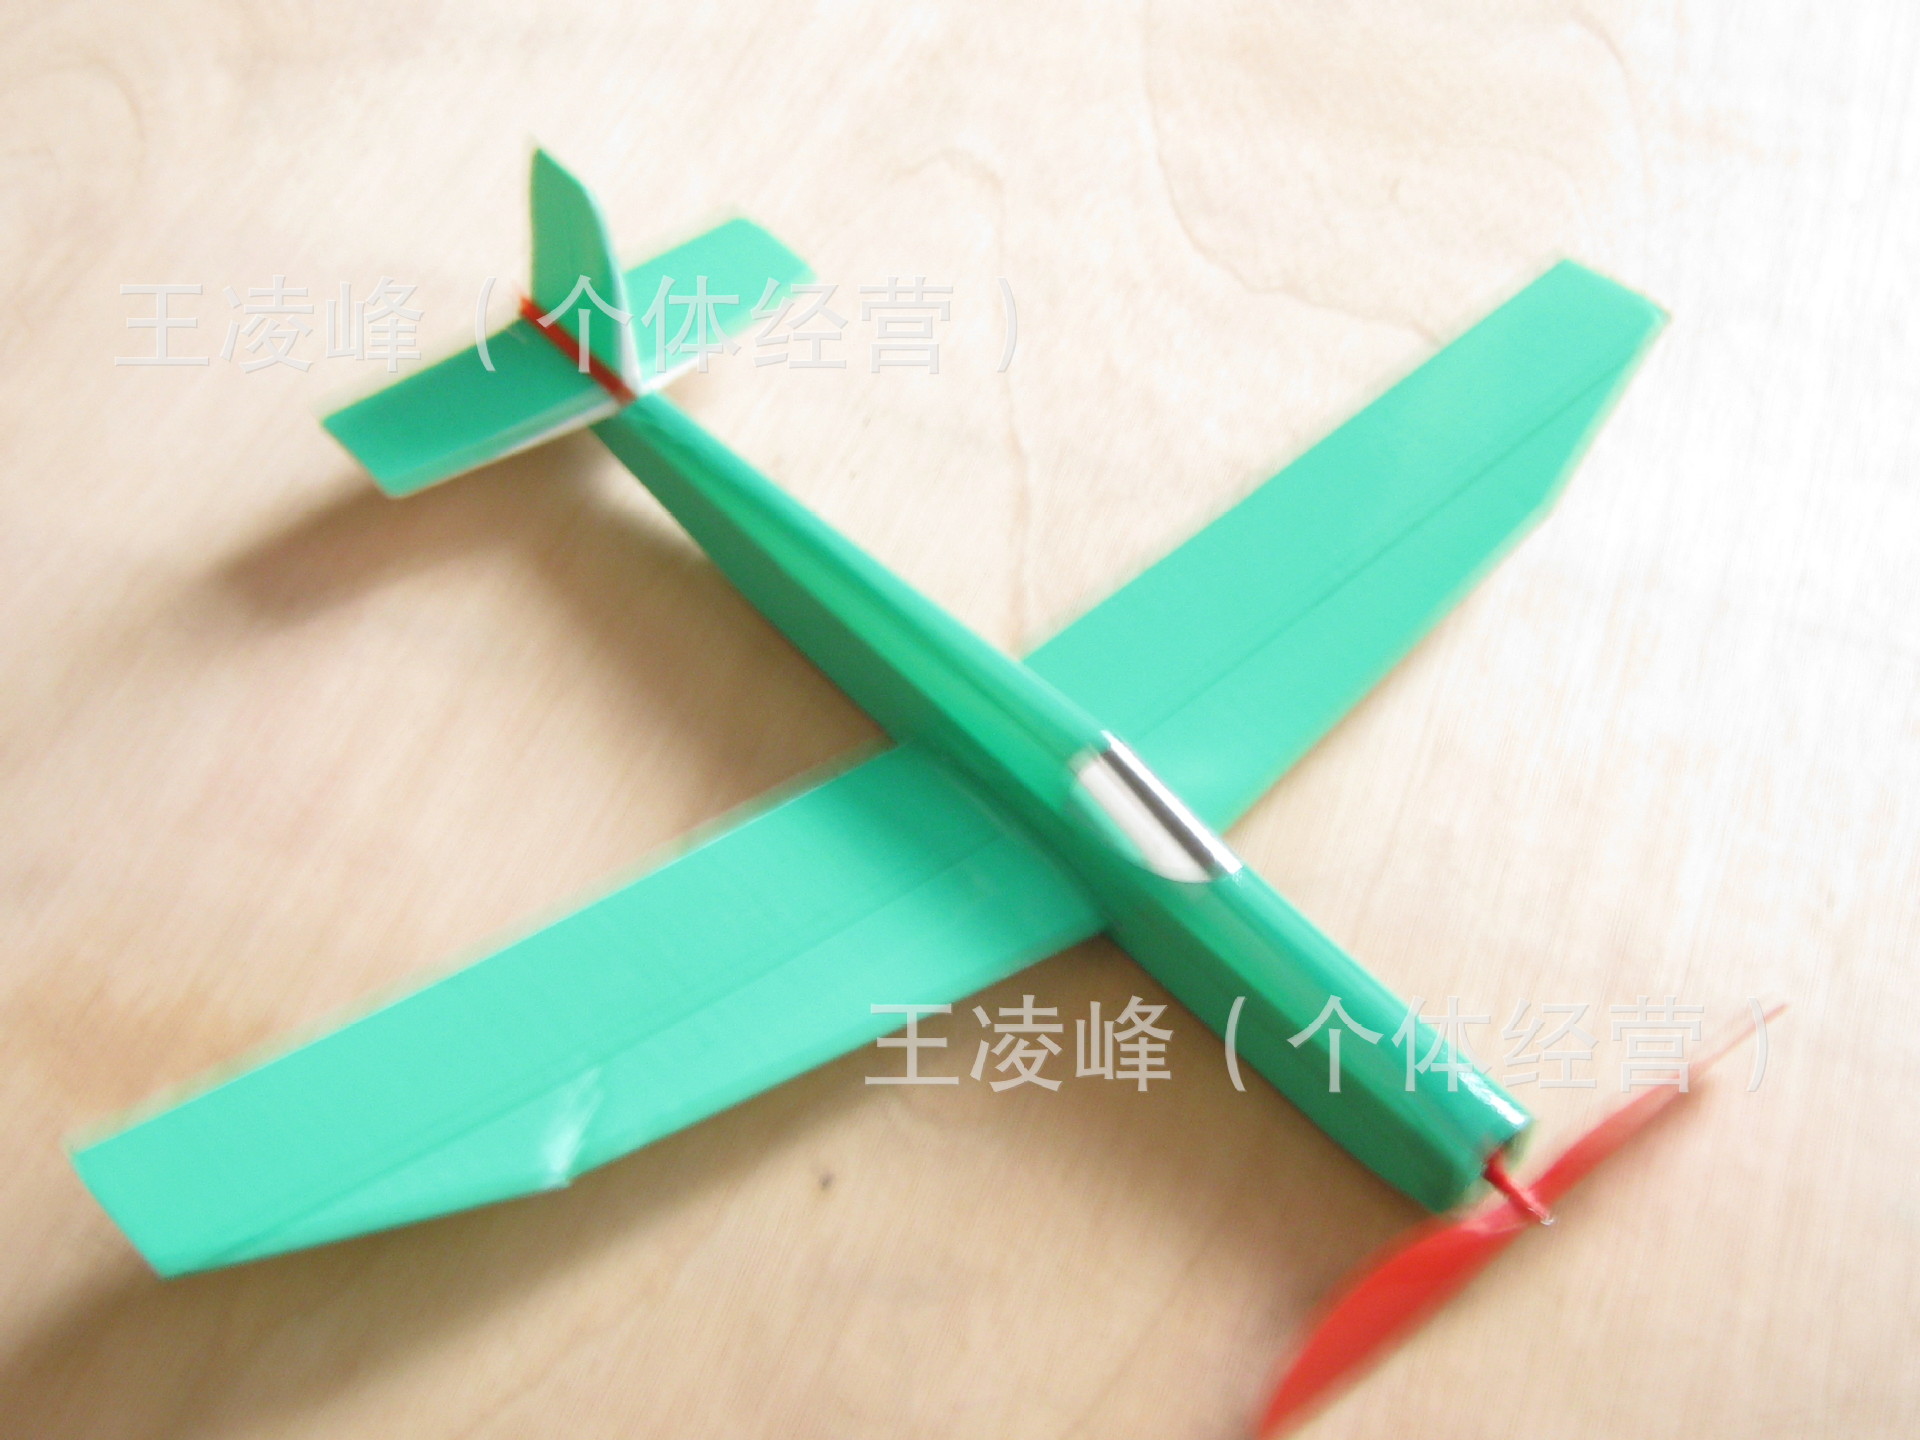 手工制作橡筋动力模型飞机